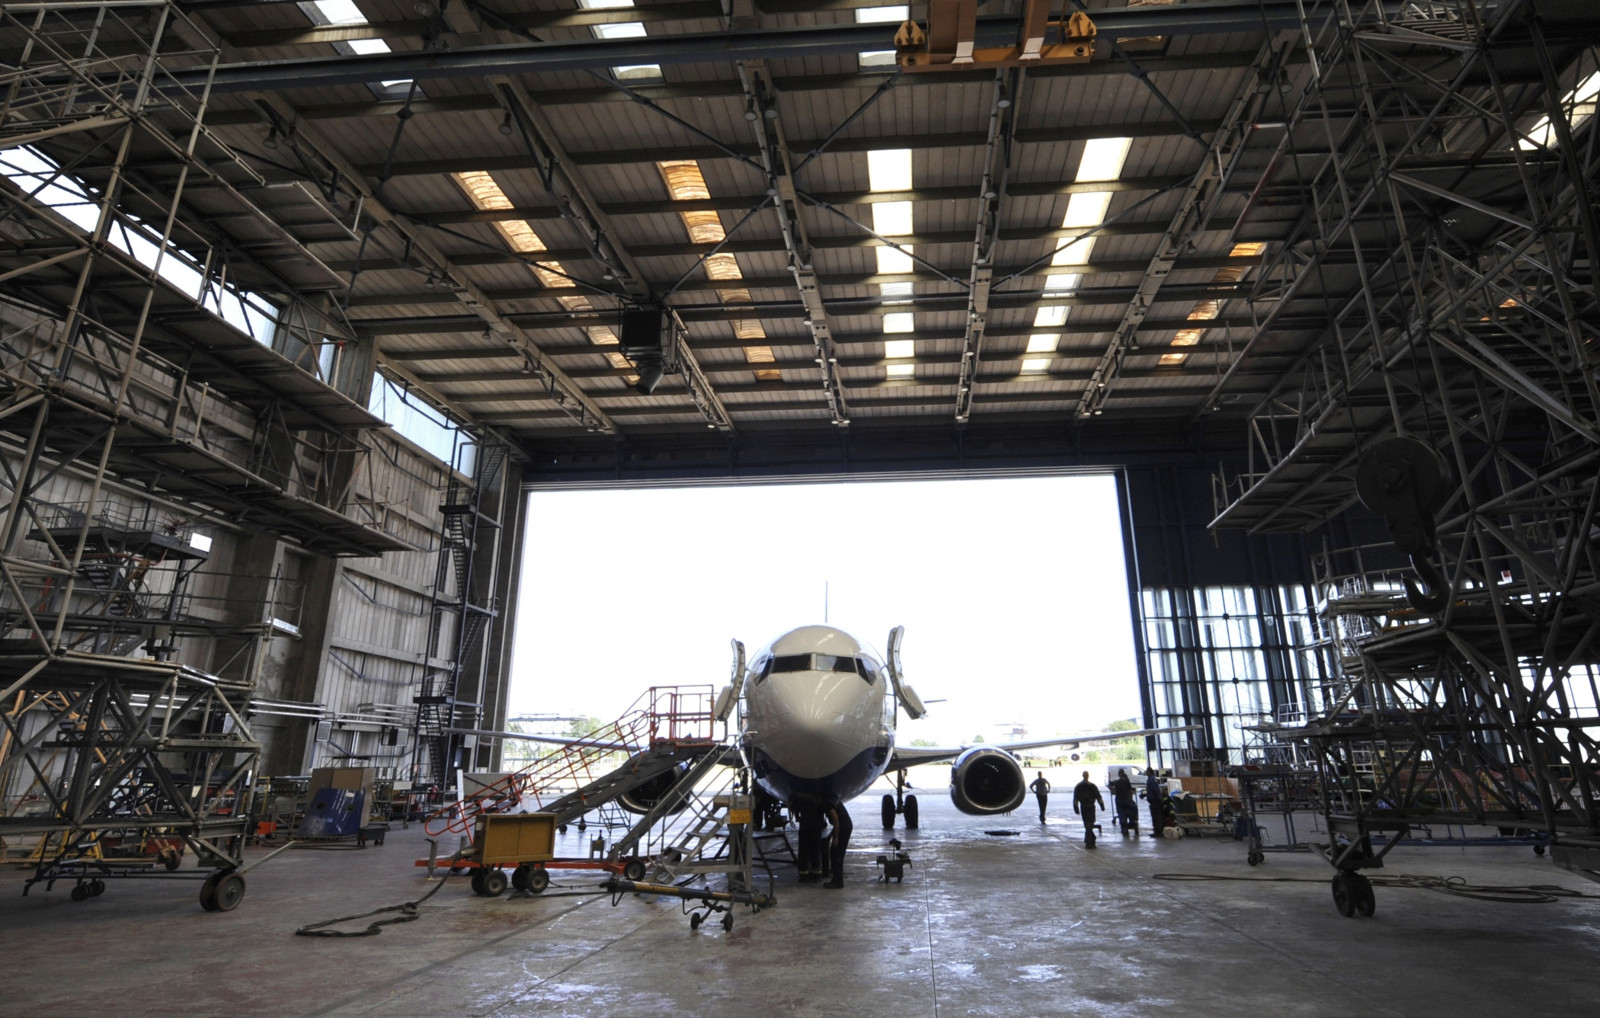 Vibrationen bei der Bearbeitung können zu oberflächlichen Mängeln führen, die die Qualität von Flugzeugkomponenten beeinträchtigen.